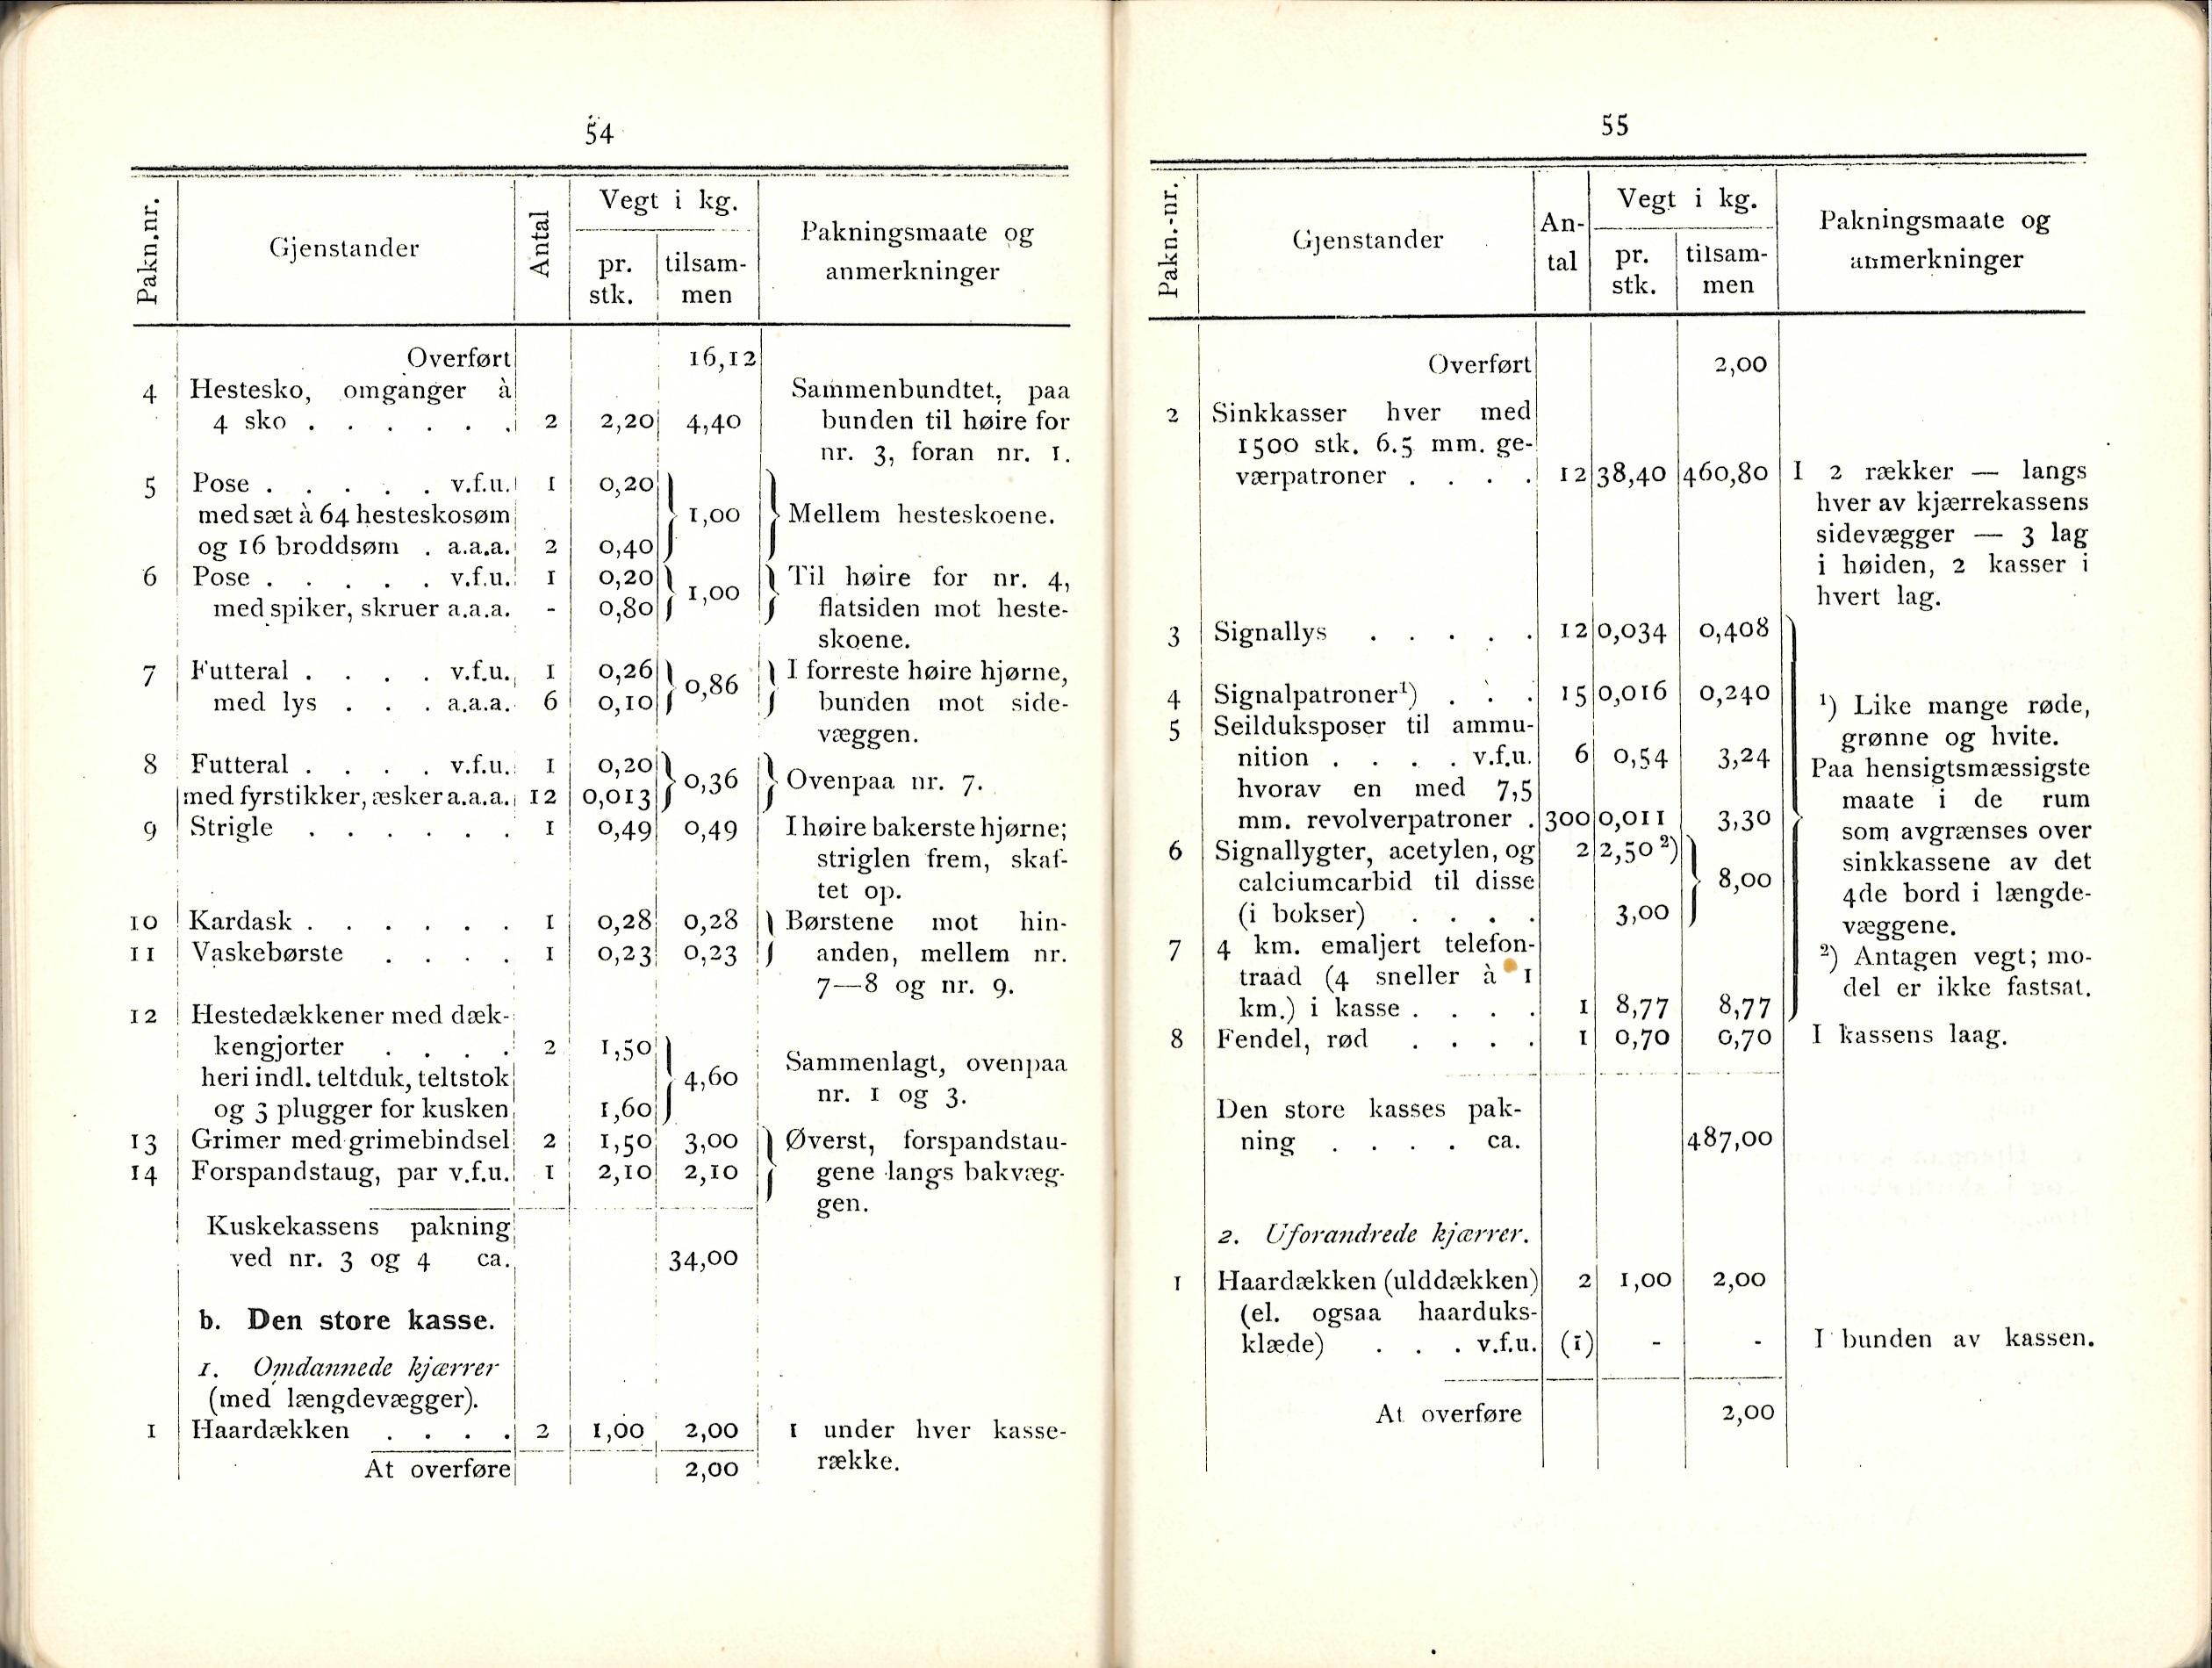 ./doc/reglement/Utrustning/Utrustnings-og-Pakningsplan-1917-12.jpg